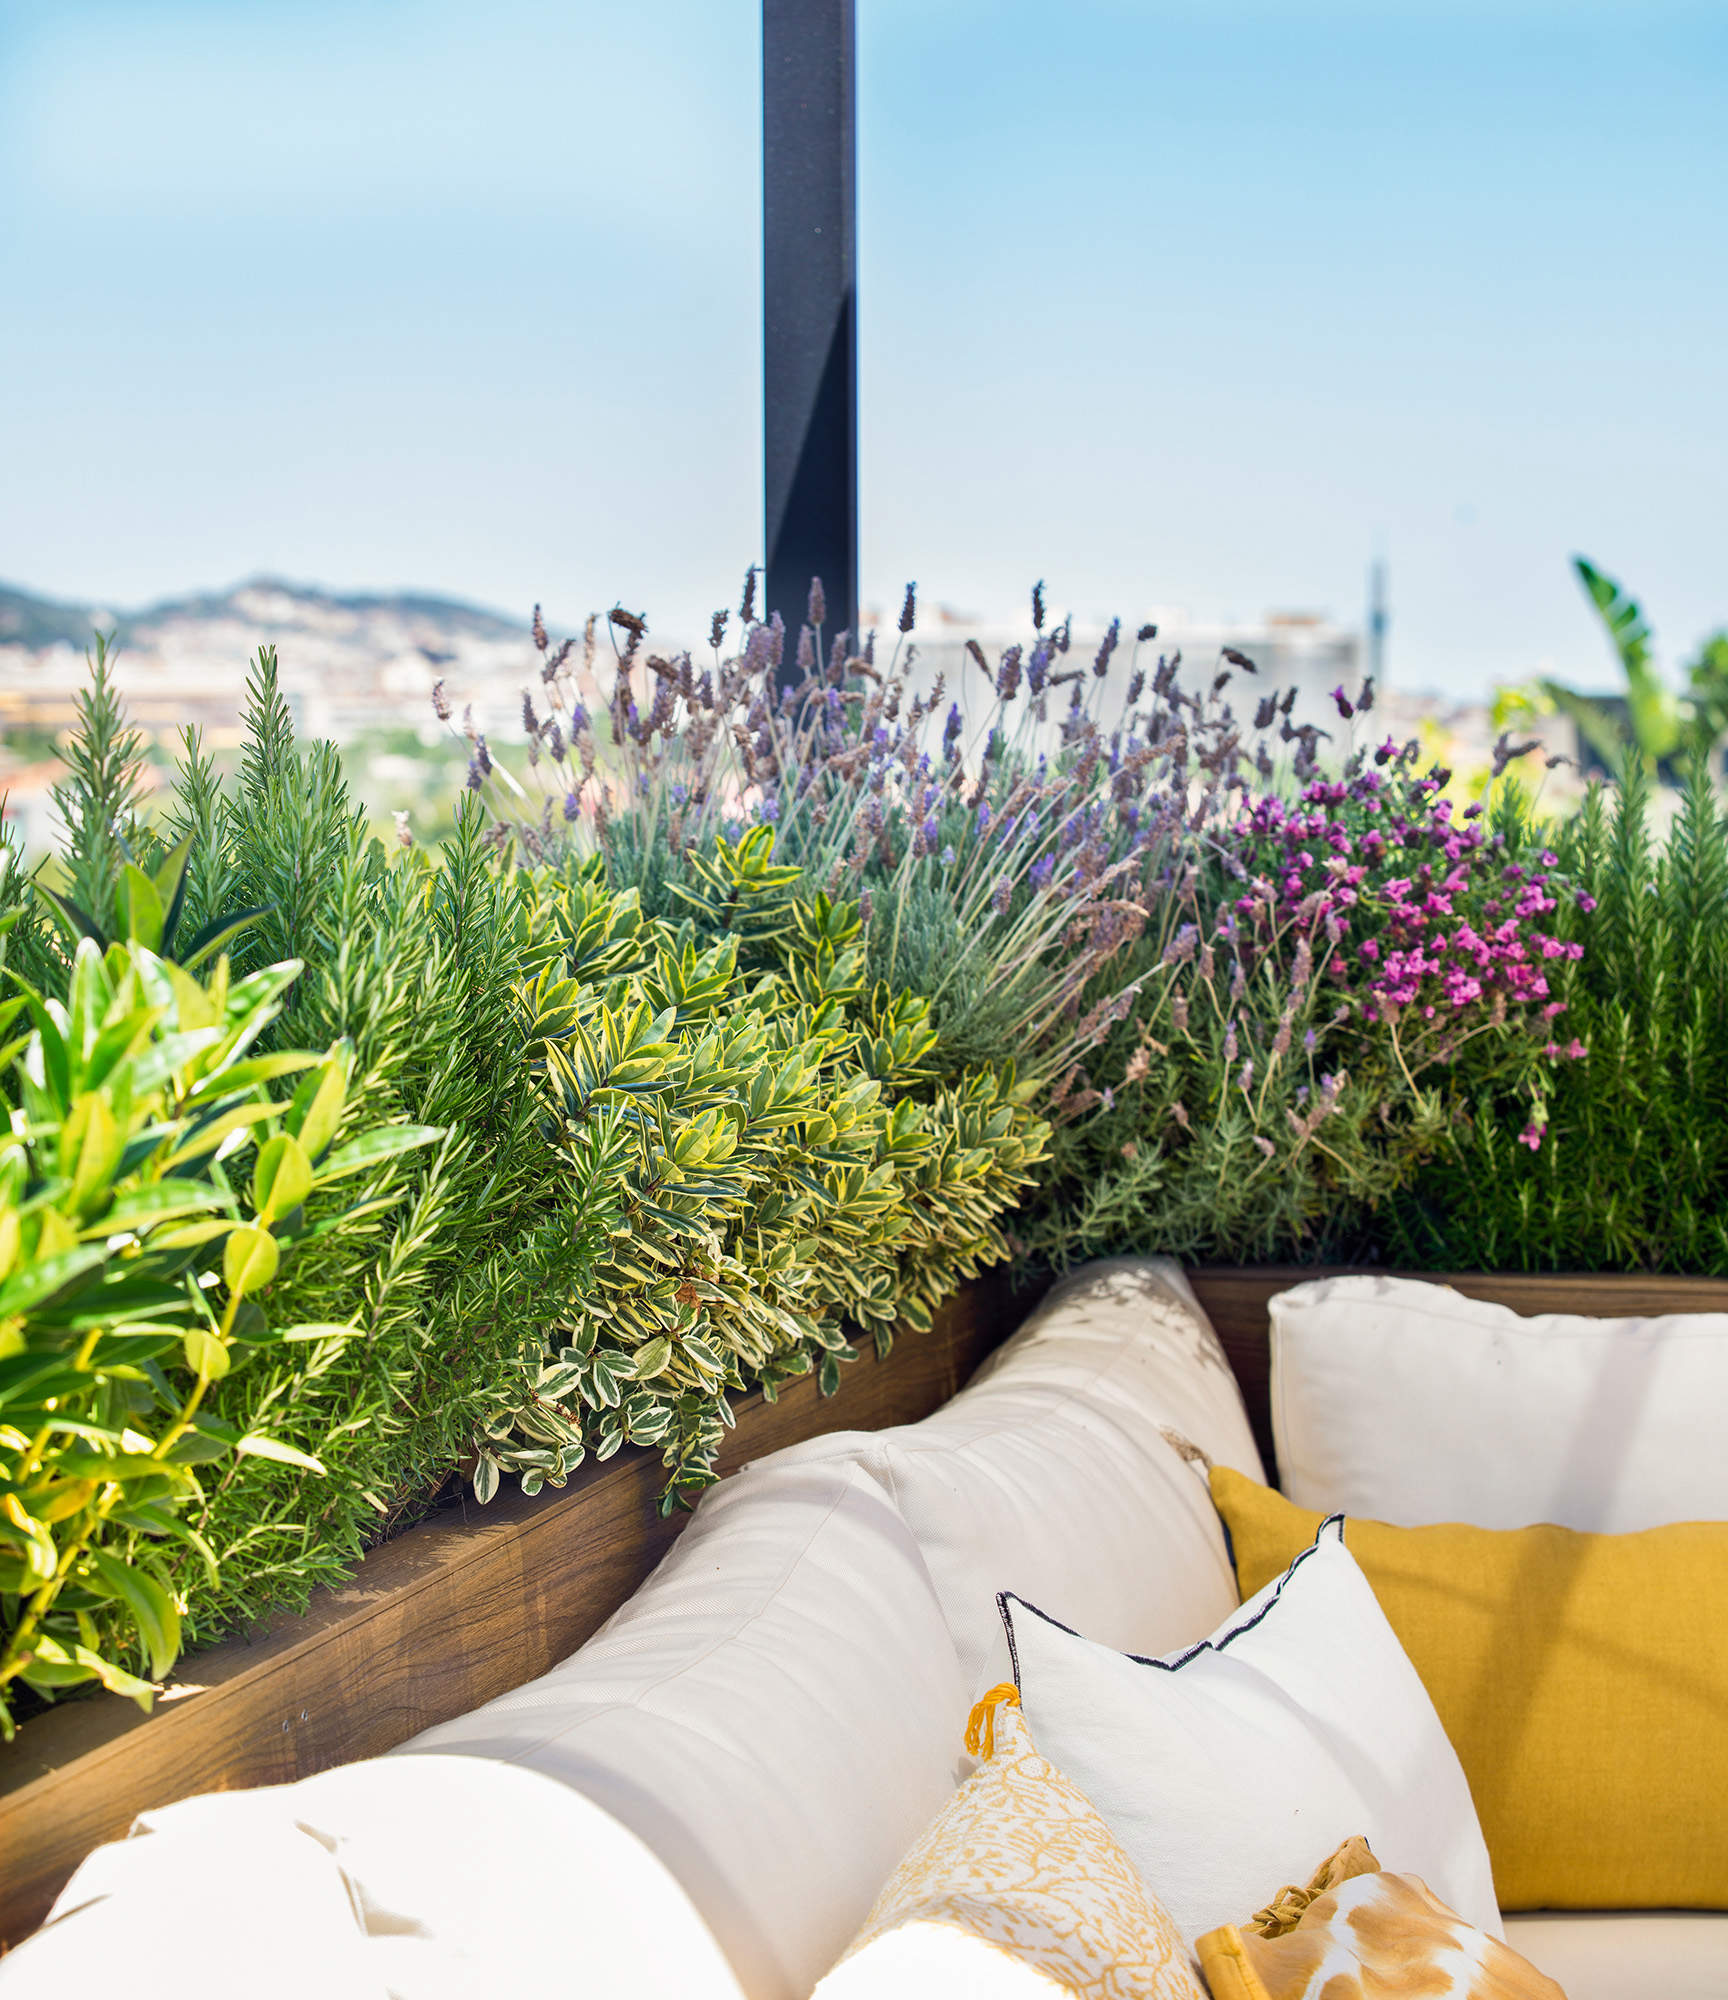 Detalle con plantas en la terraza.